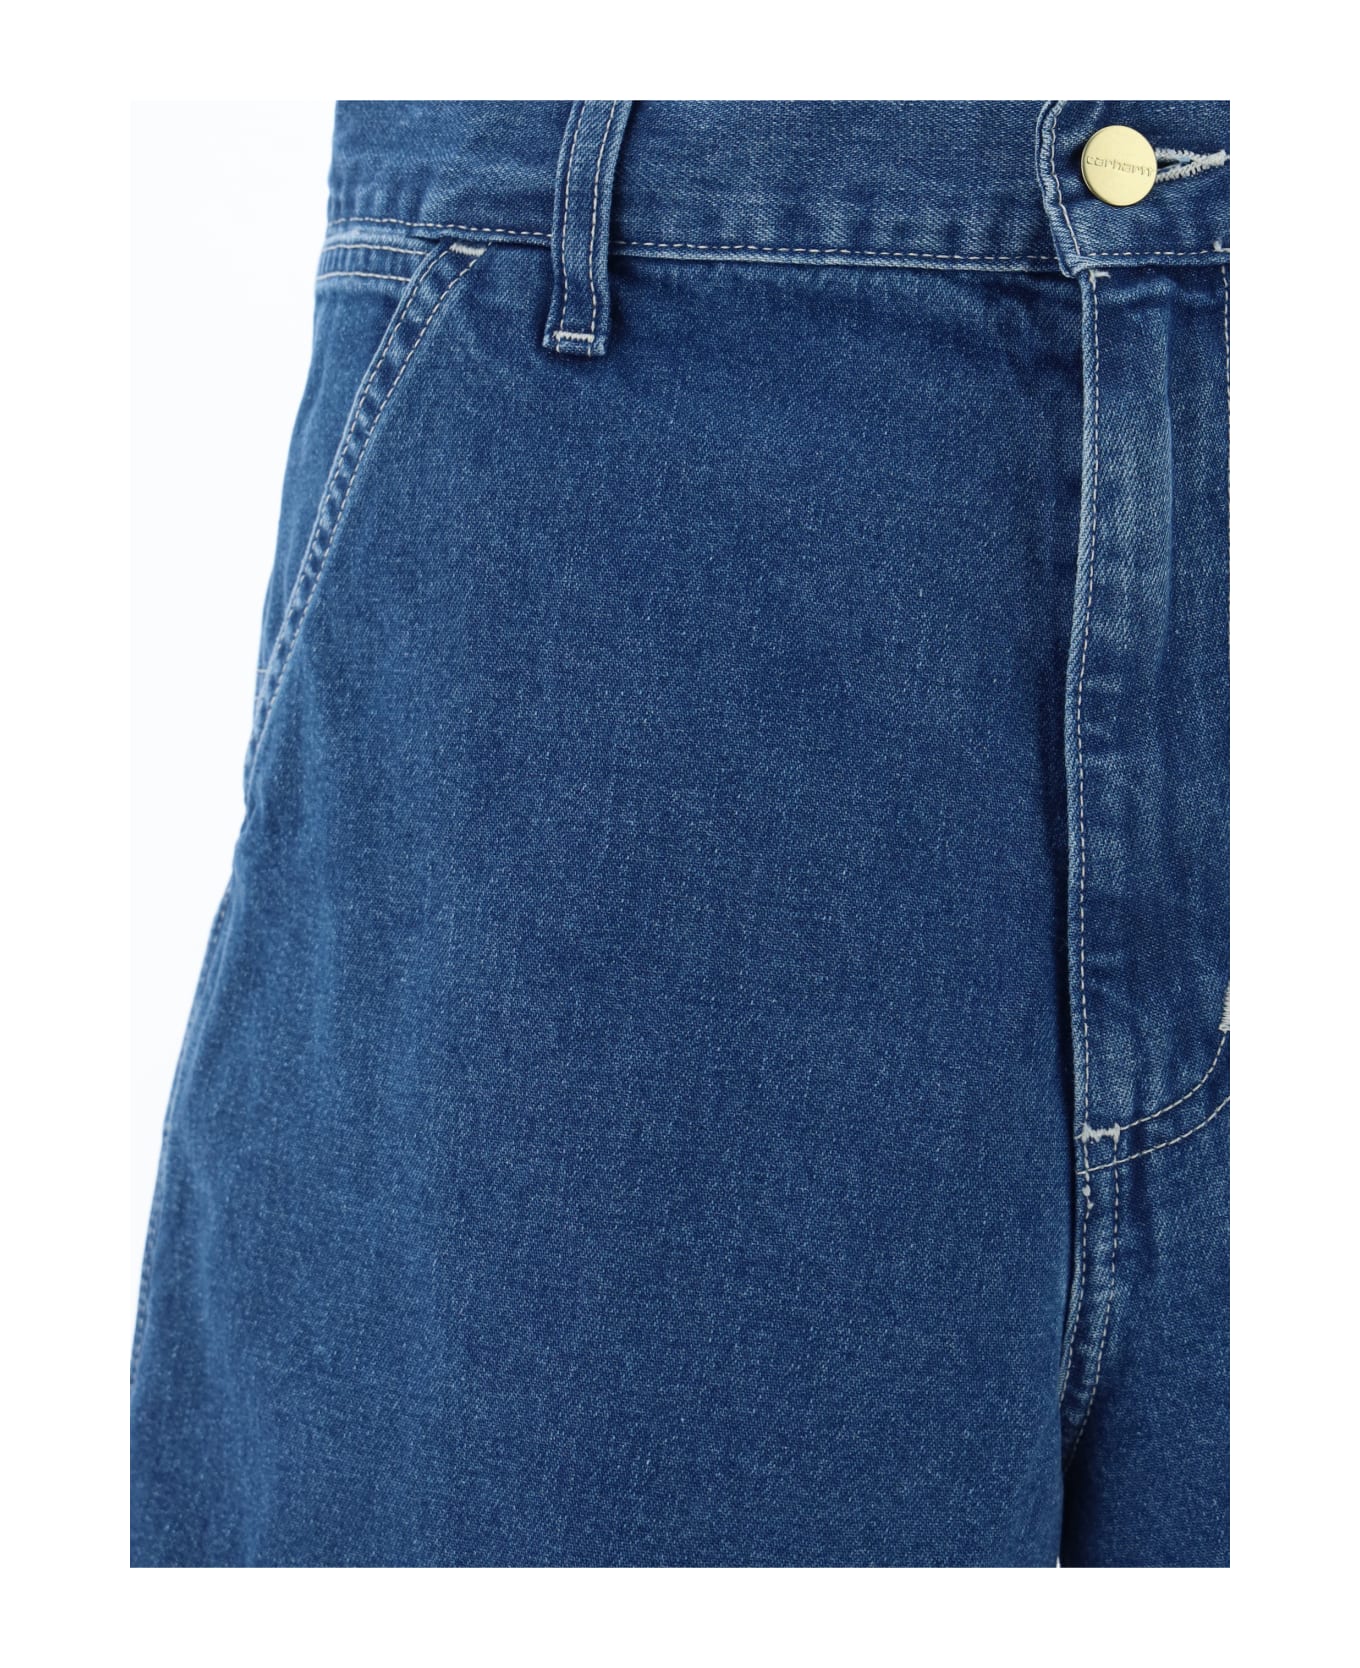 Carhartt Simple Shorts - Blue ショートパンツ